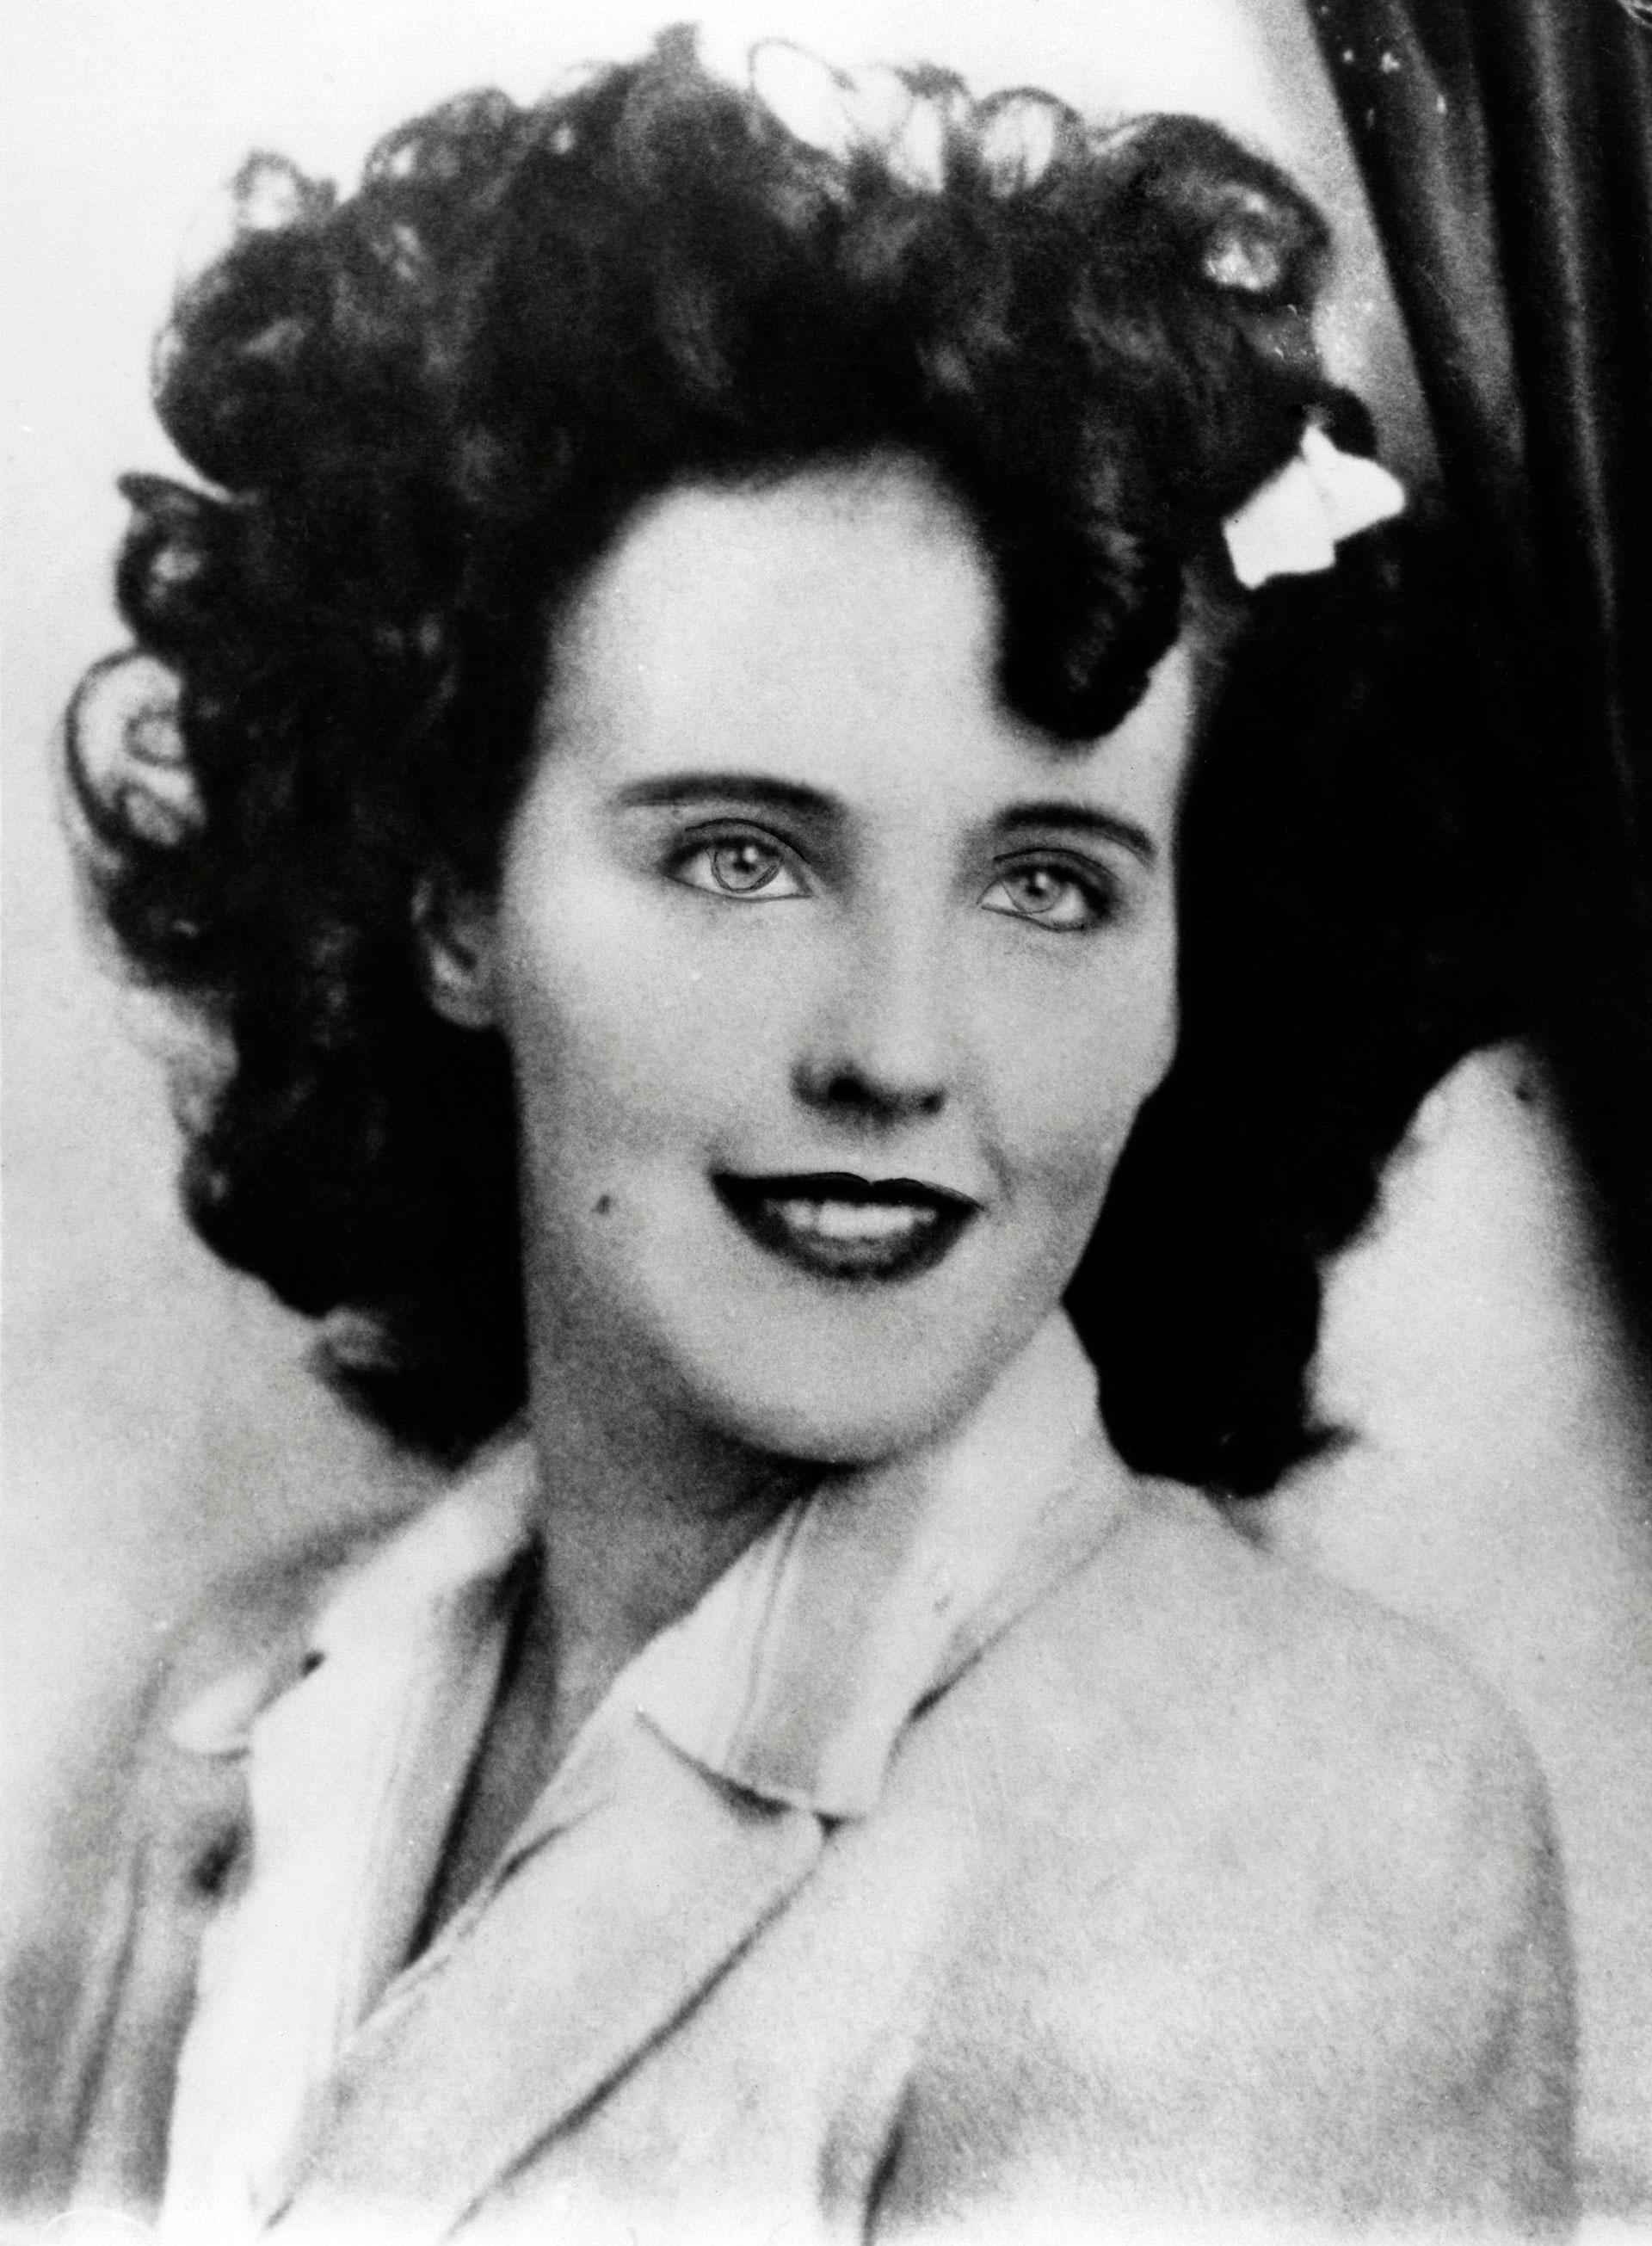 Después de su muerte, a Elizabeth Short la comenzaron a llamar la Dalia Negra, por una película que se estrenó cerca de la fecha de su asesinato (enero de 1947) titulada "La Dalia Azul" (Everett/Shutterstock )